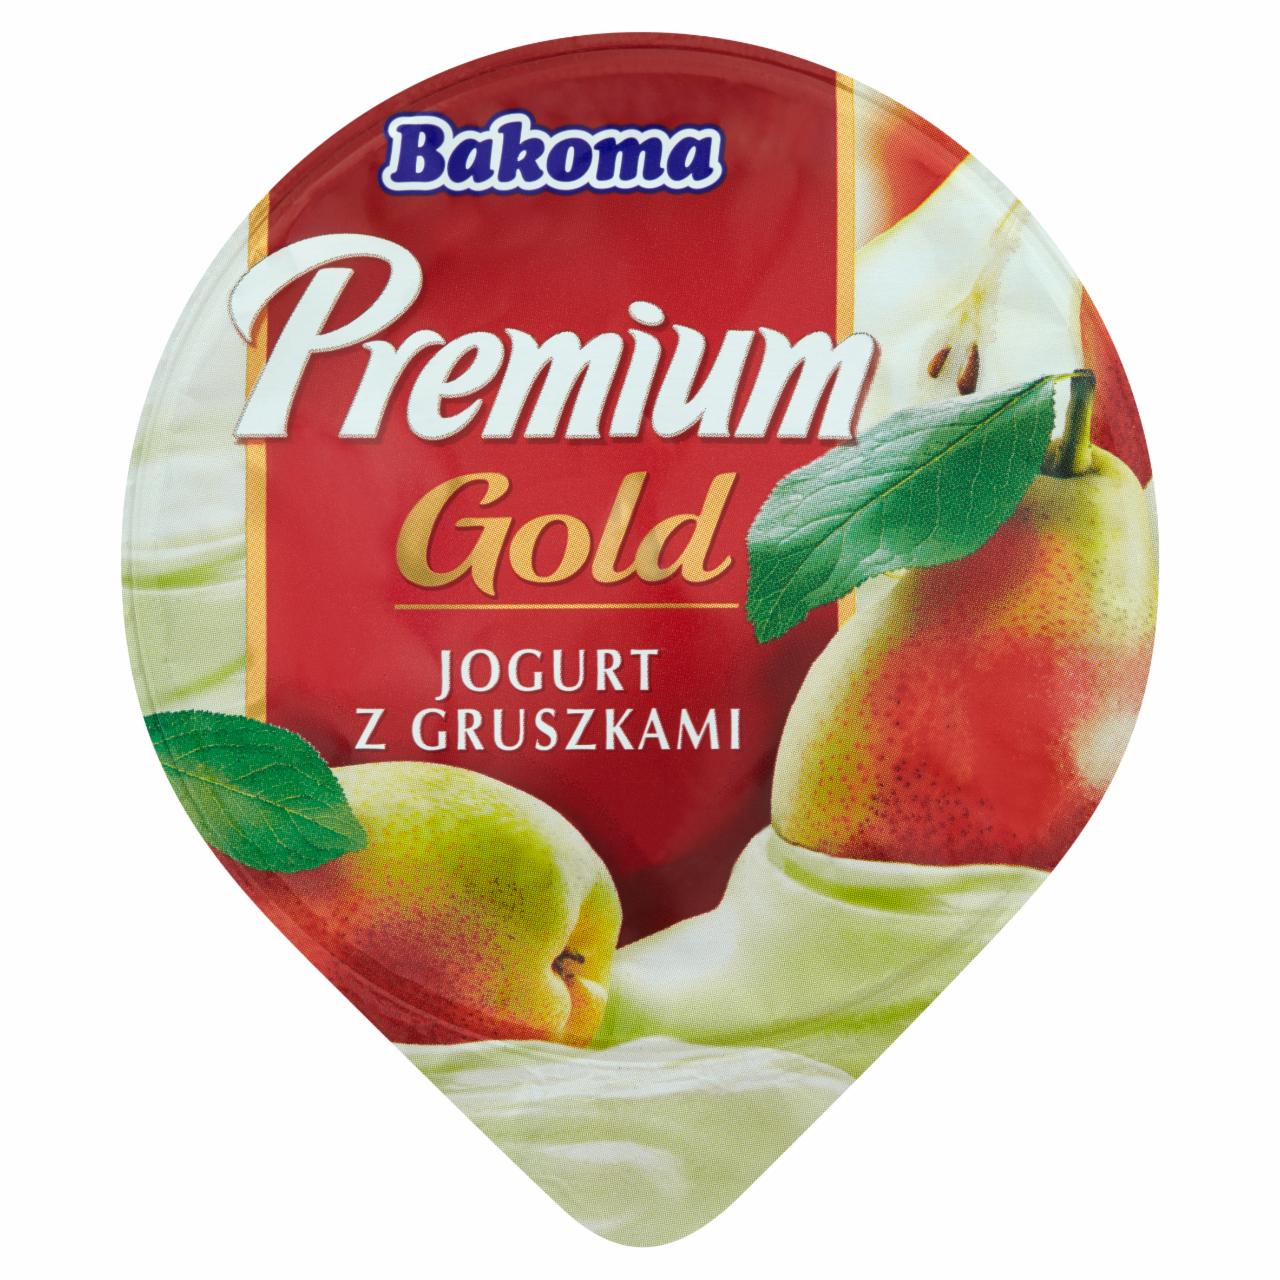 Zdjęcia - Bakoma Premium Gold Jogurt z gruszkami 140 g